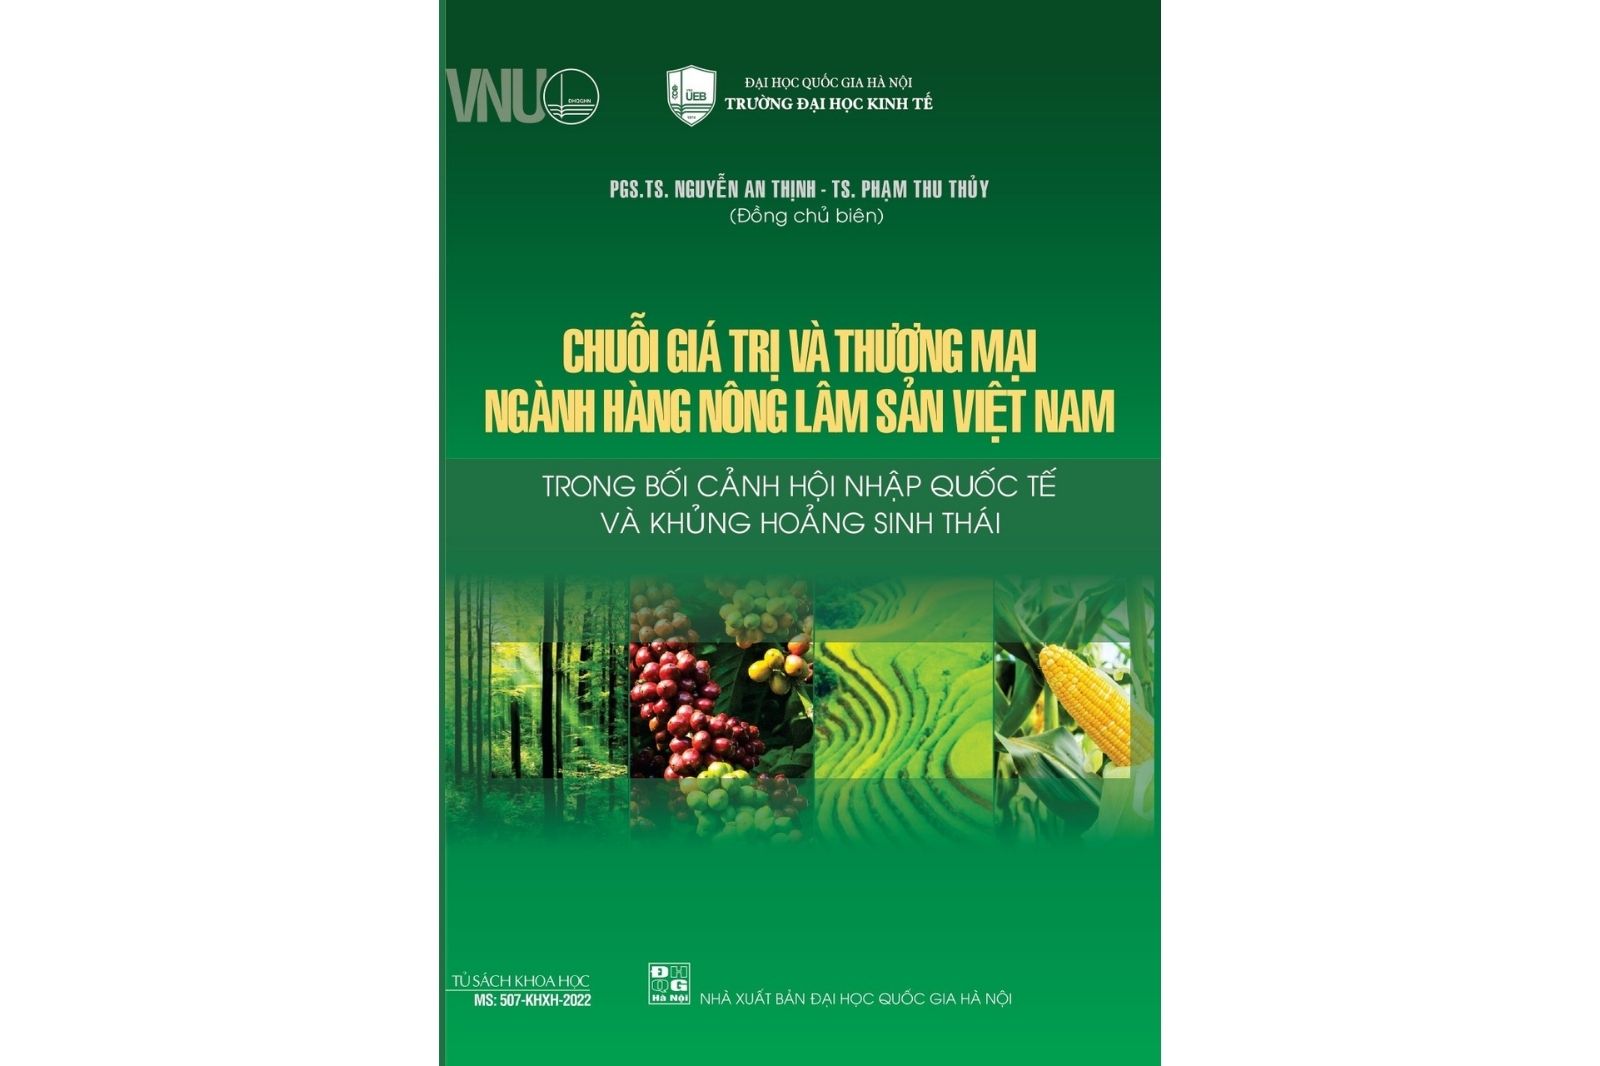 Chuỗi giá trị và thương mại ngành hàng nông lâm sản Việt Nam trong bối cảnh hội nhập quốc tế và khủng hoảng sinh thái